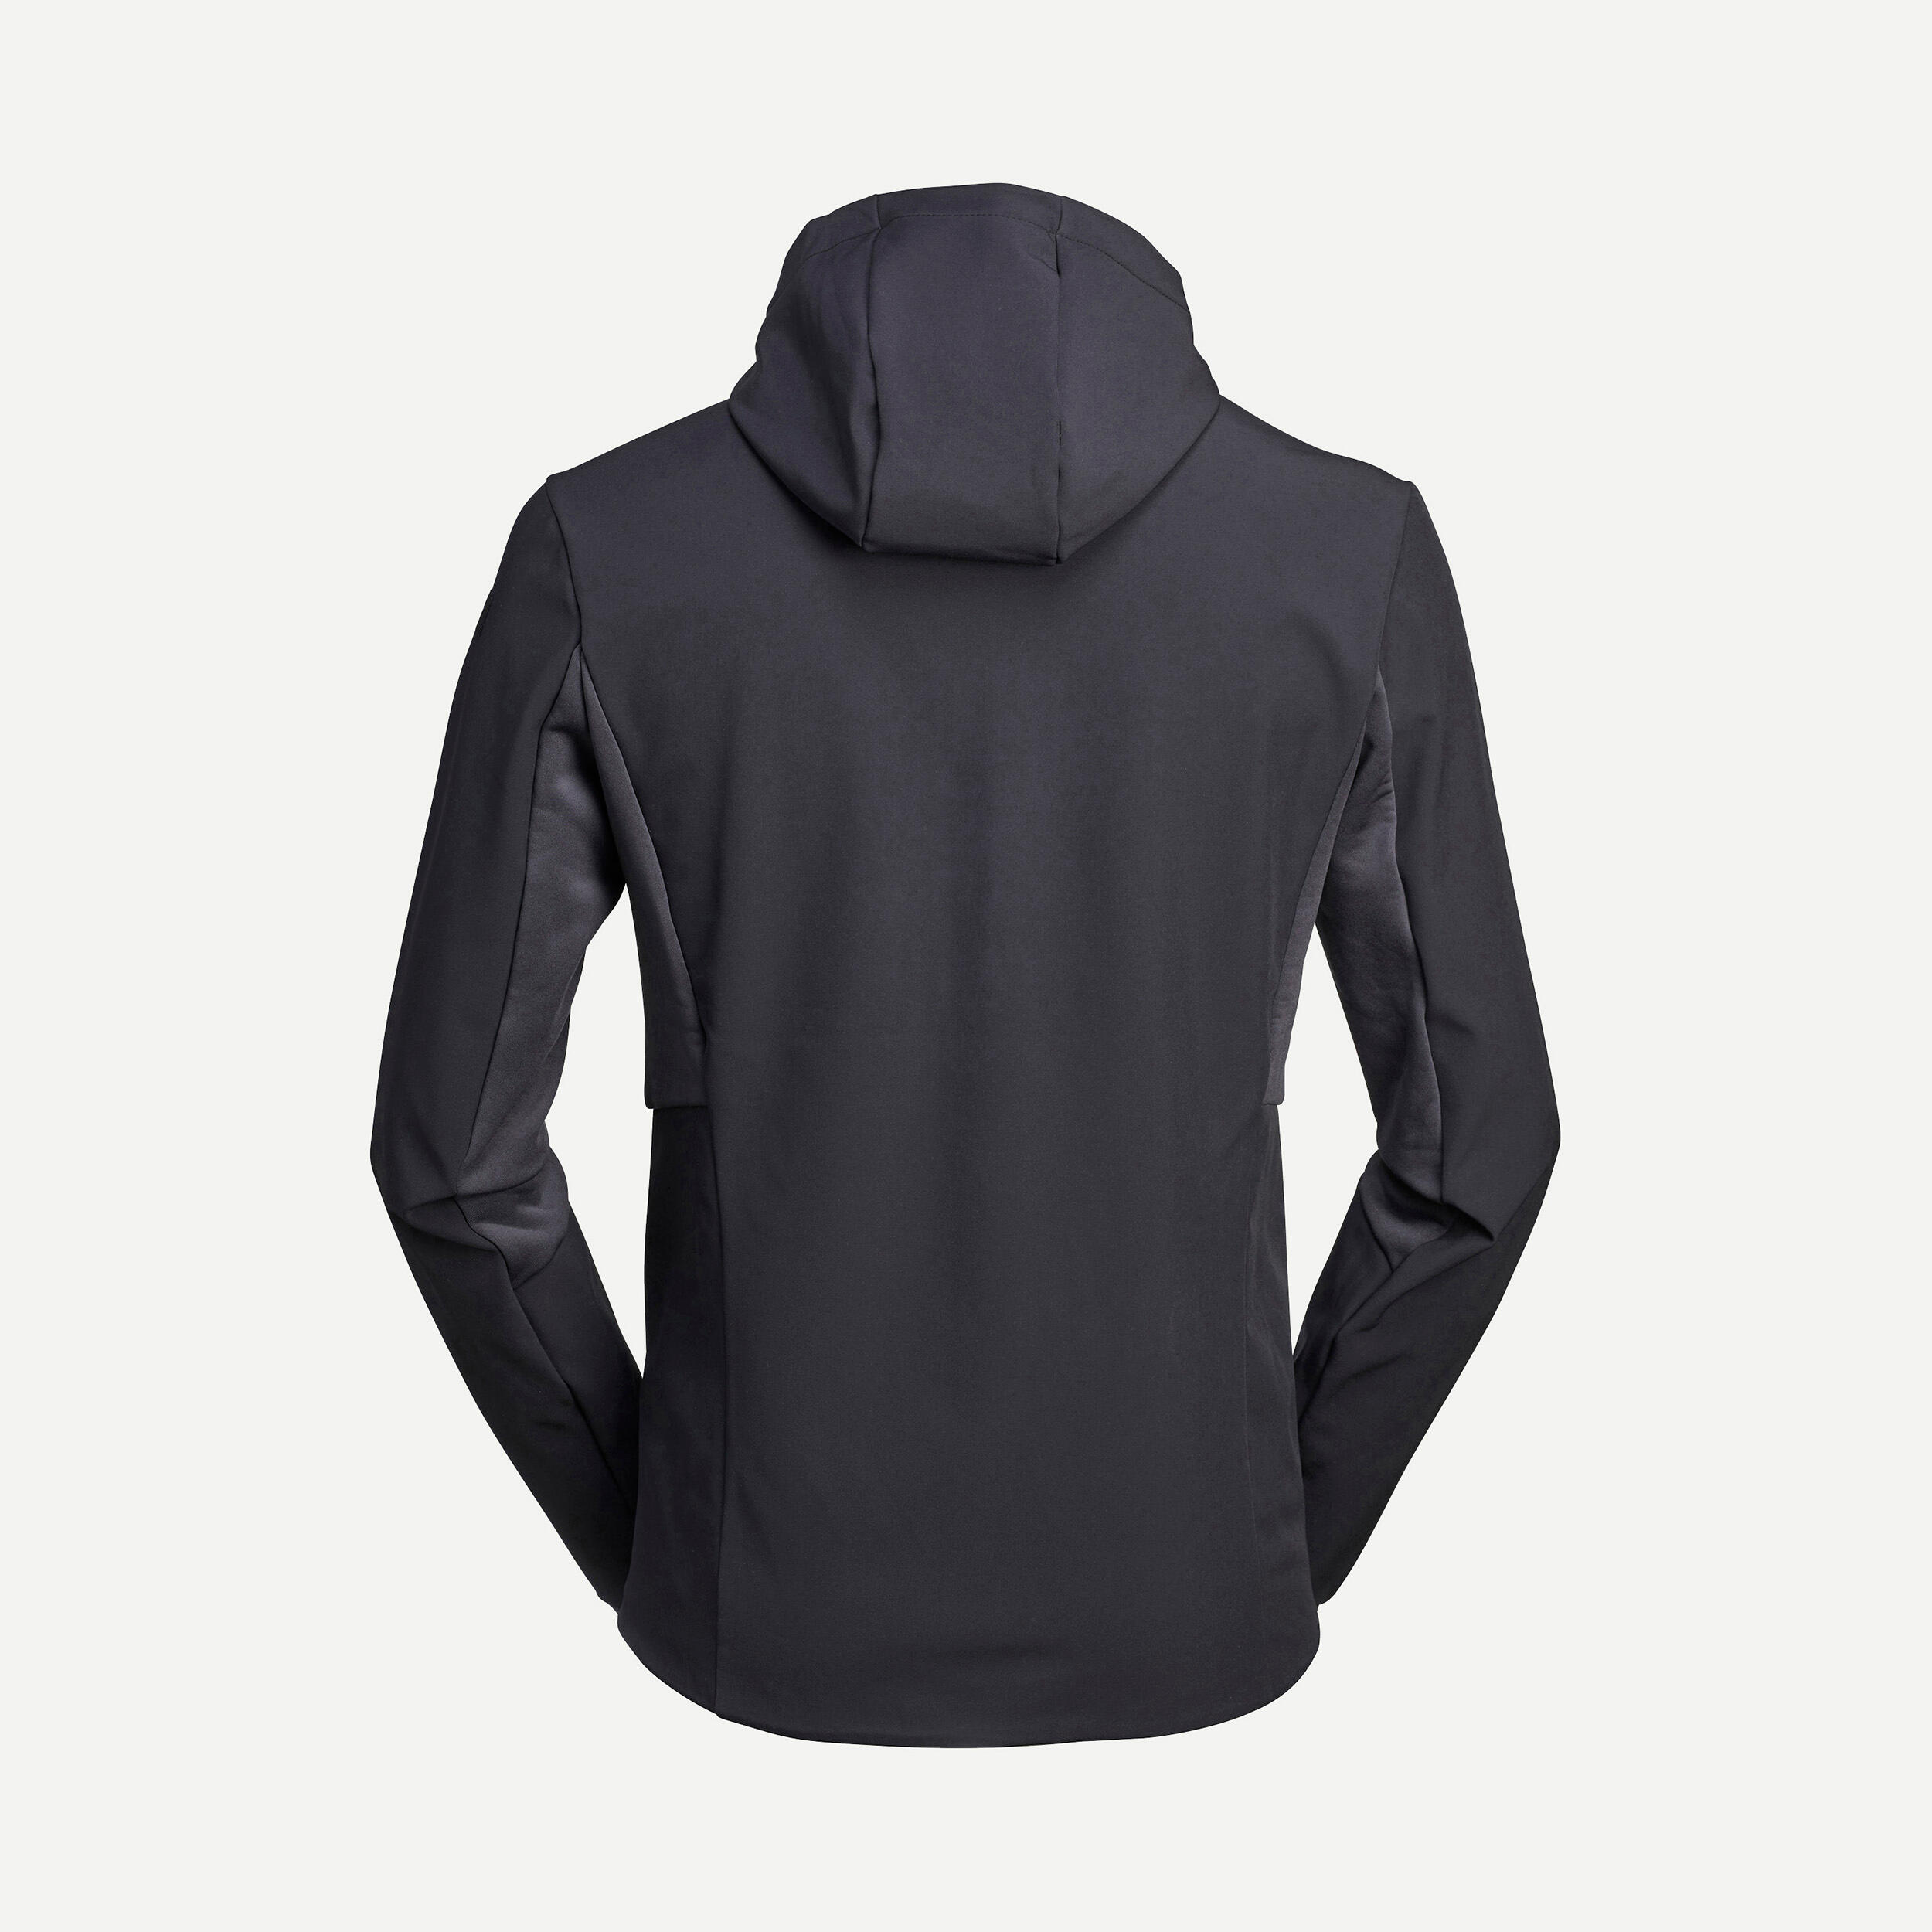 Windbreaker jacket -  softshell - warm  - MT500 - men’s 4/5